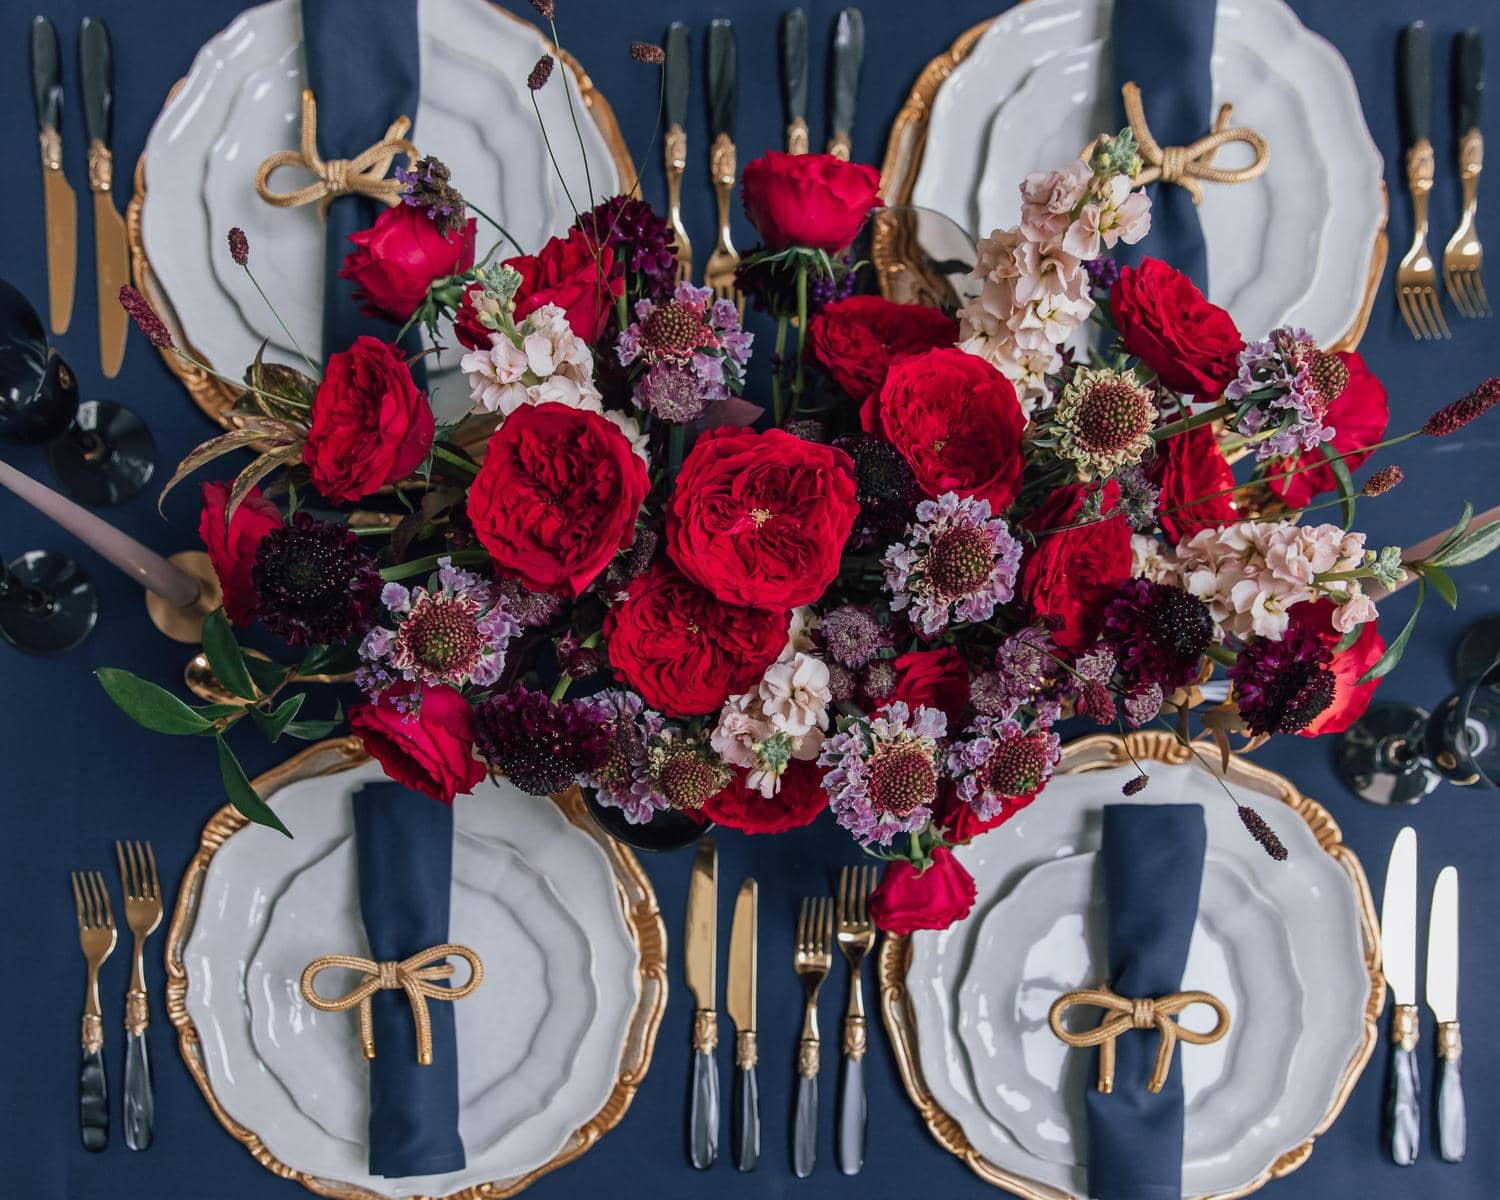 Tess Arreglo de centro de mesa con rosas de David Austin